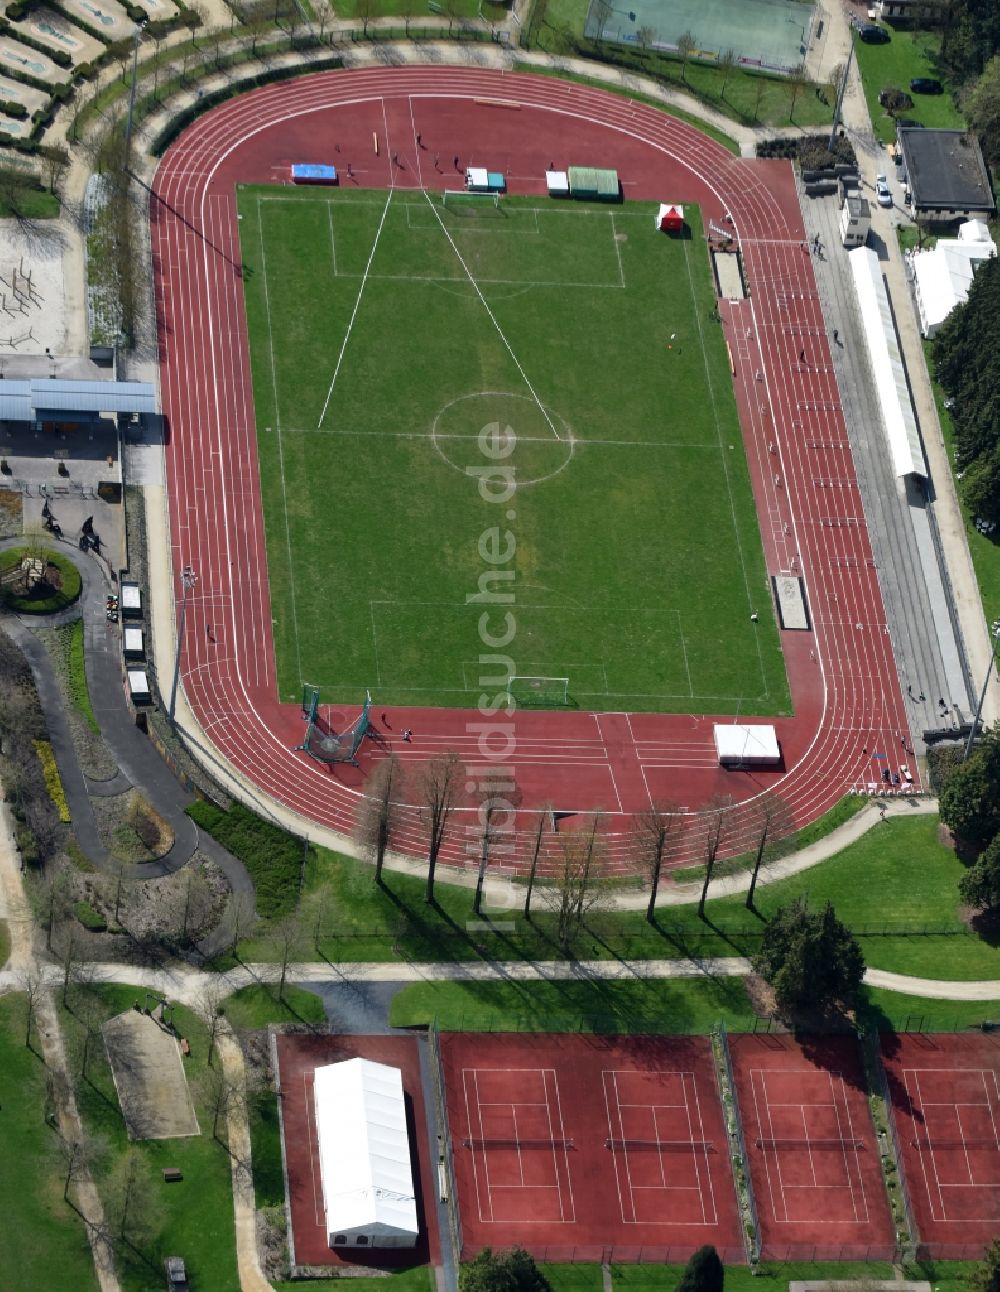 Beersel aus der Vogelperspektive: Sportstätten-Gelände der Arena des Stadion in Beersel in Vlaanderen, Belgien